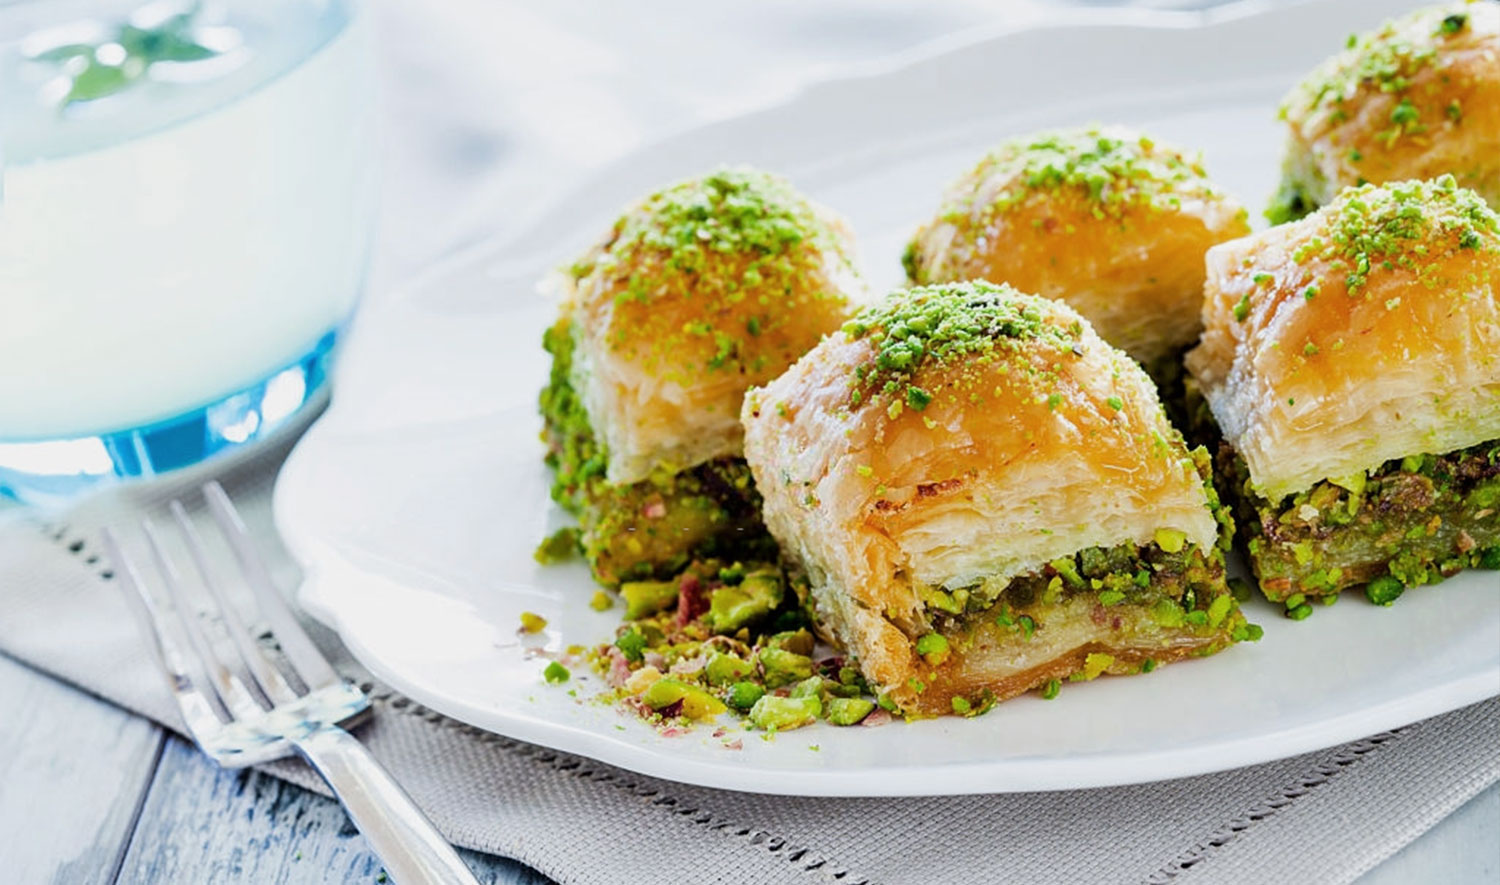 Ở Thổ Nhĩ Kỳ, những tấm bánh ngọt làm bánh baklava được cán mỏng đến mức khi giơ lên ​​người đứng phía sau có thể nhìn thấy như thể qua một tấm màn lưới.